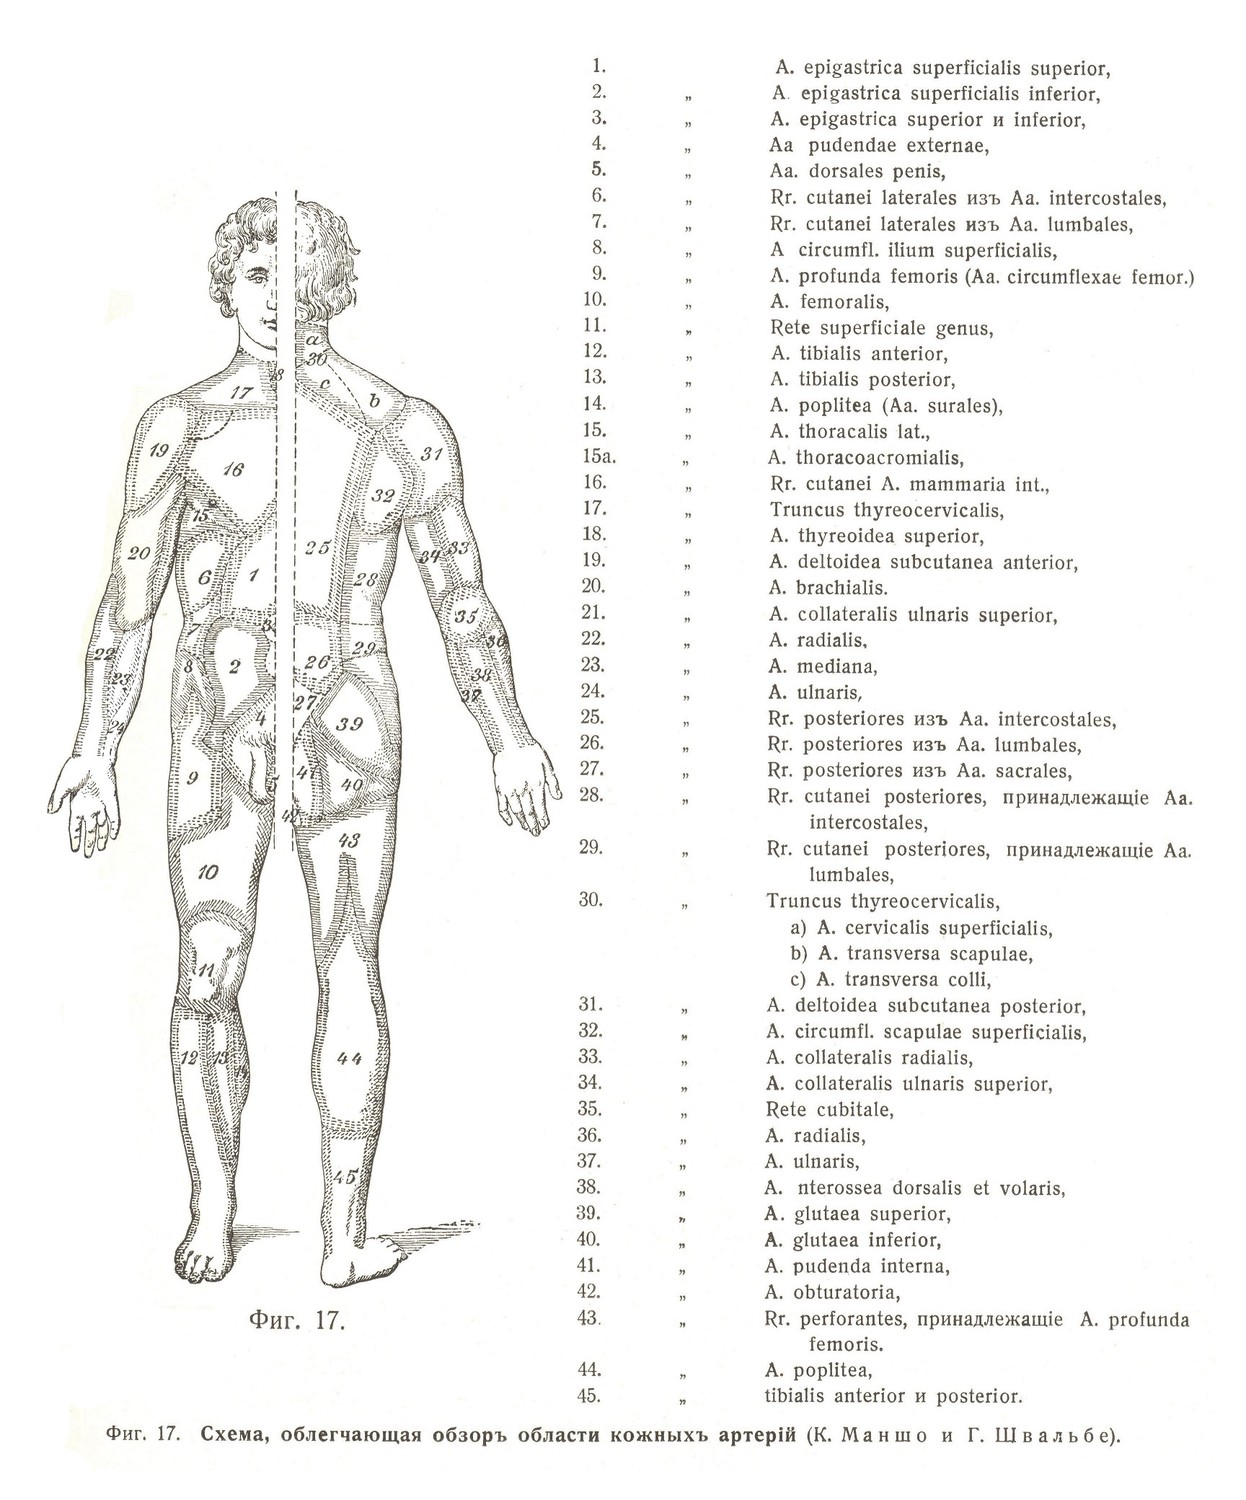 Схема, облегчающая обзоръ области кожныхъ артерій (К. Маншо и Г. Швальбе